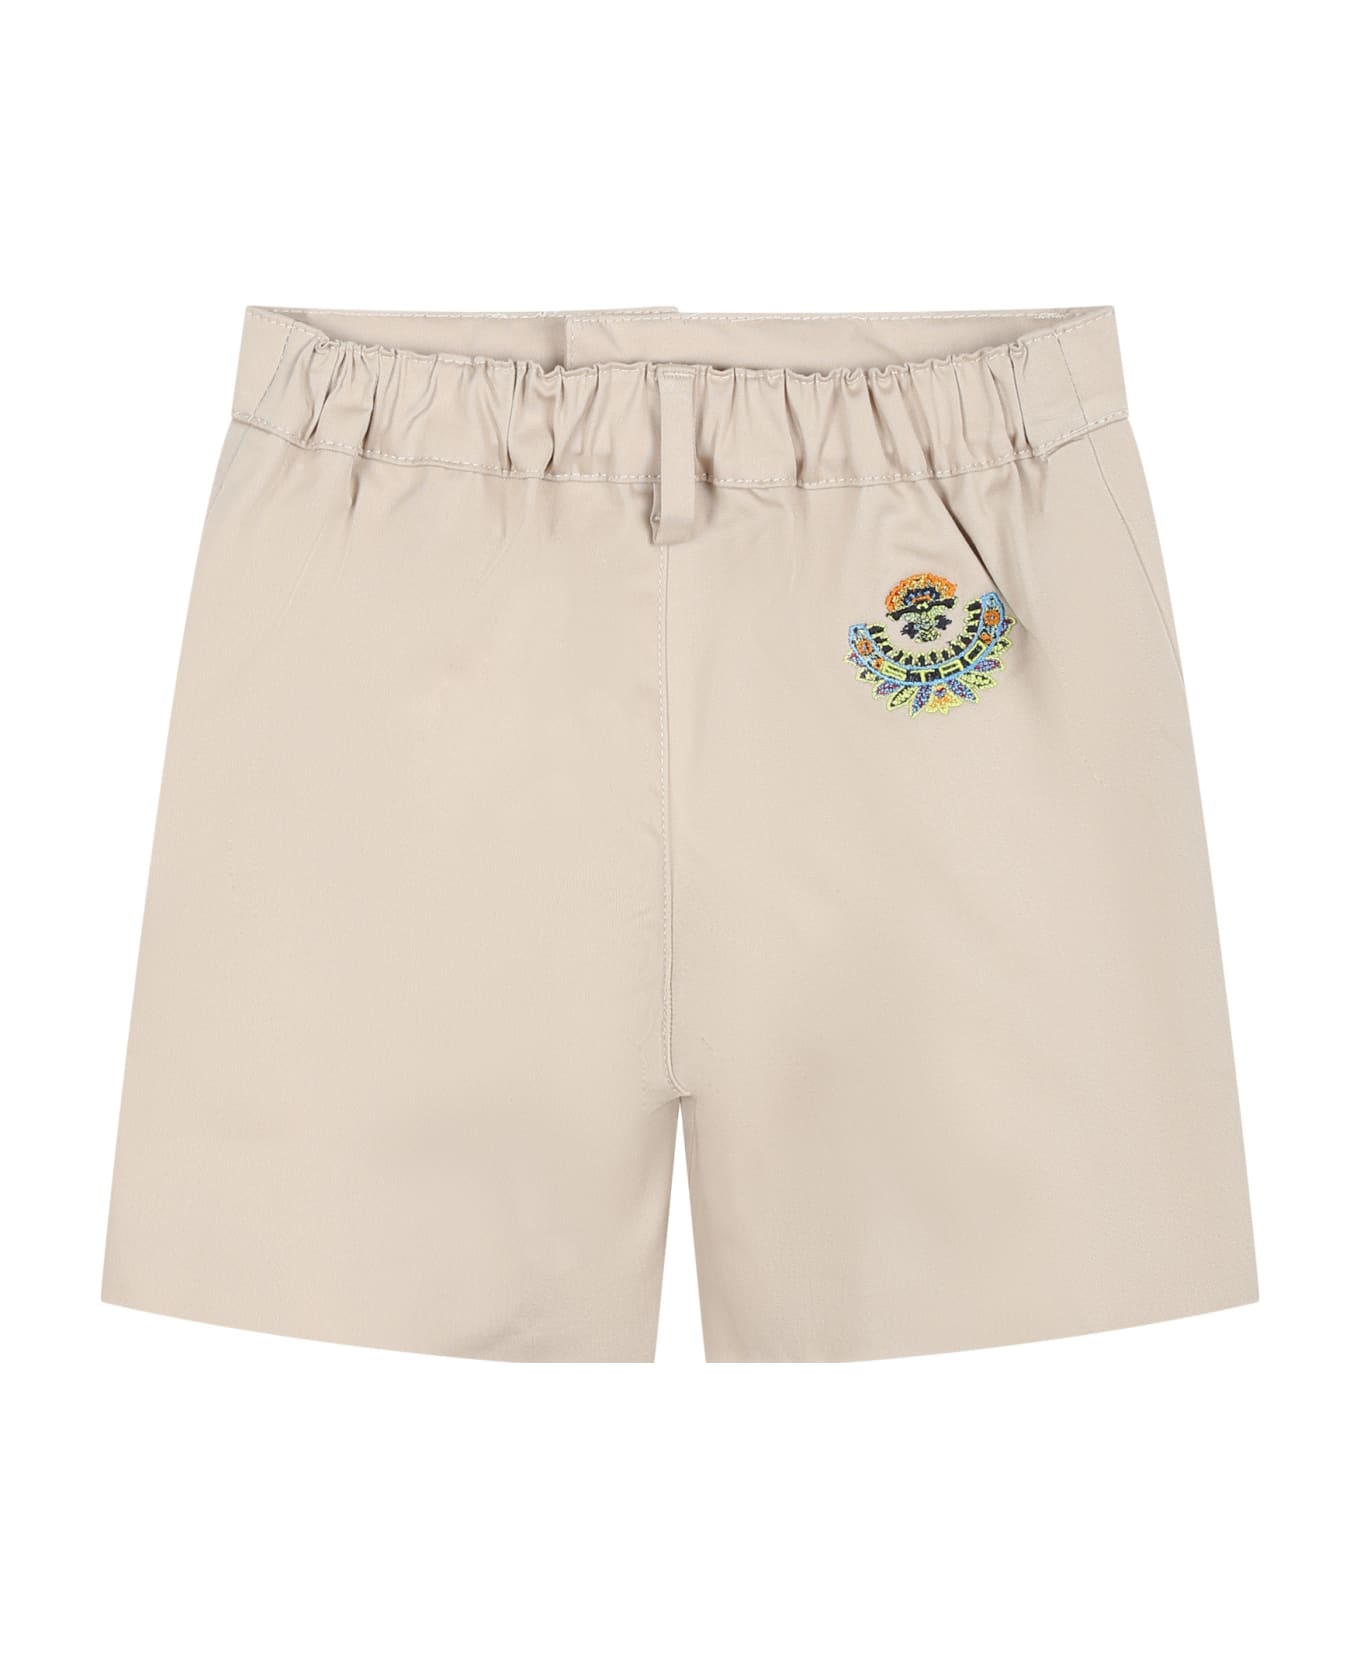 Etro Elegant Beige Shorts For Baby Boy - Beige